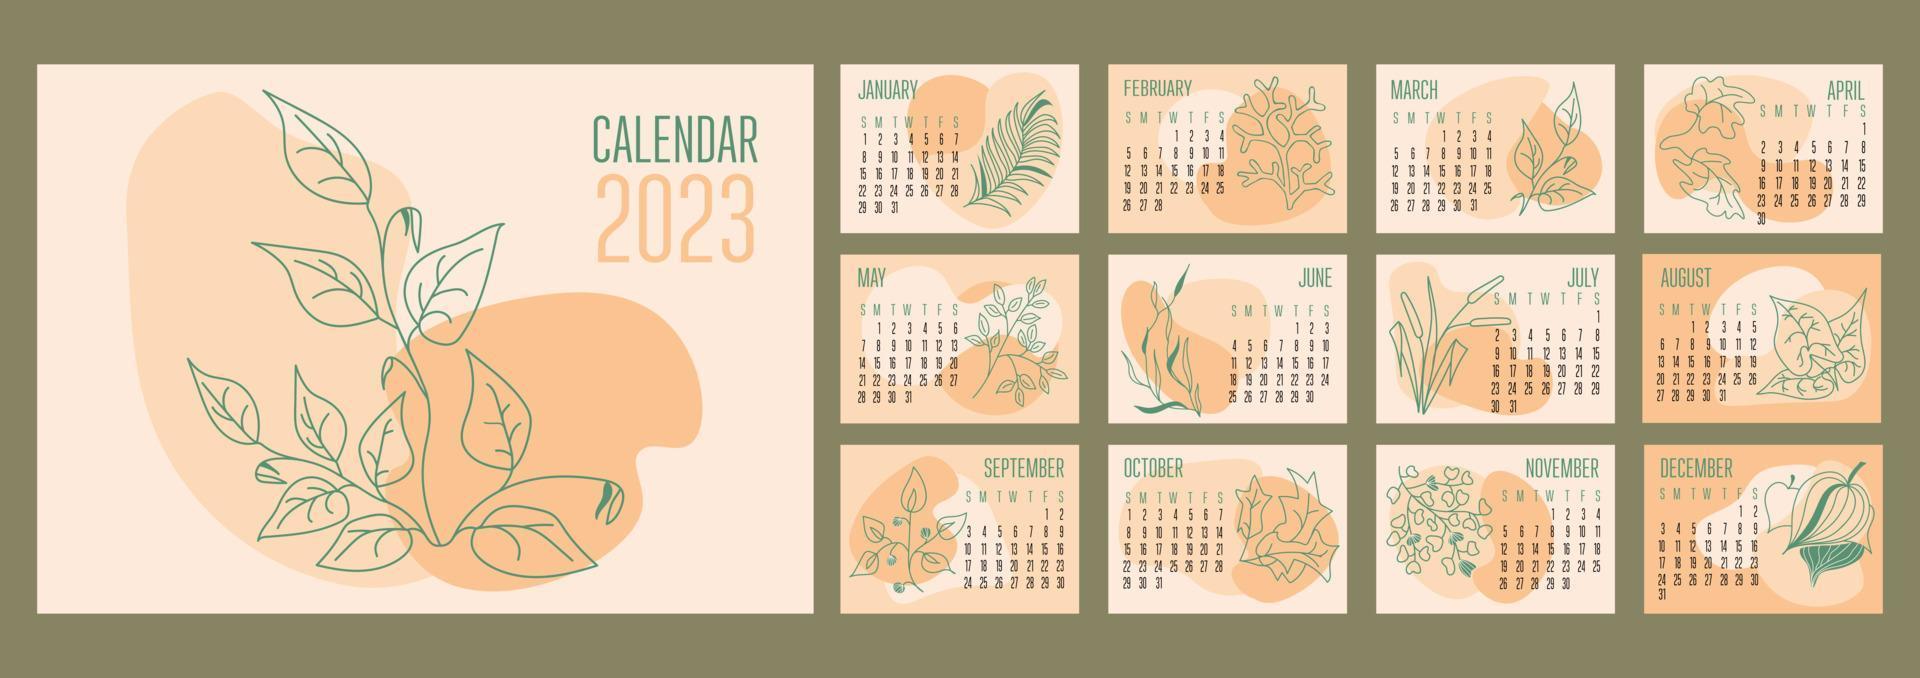 vetor calendário horizontal 2023 formas abstratas da moda com plantas botânicas desenhadas à mão. semana começa no domingo.